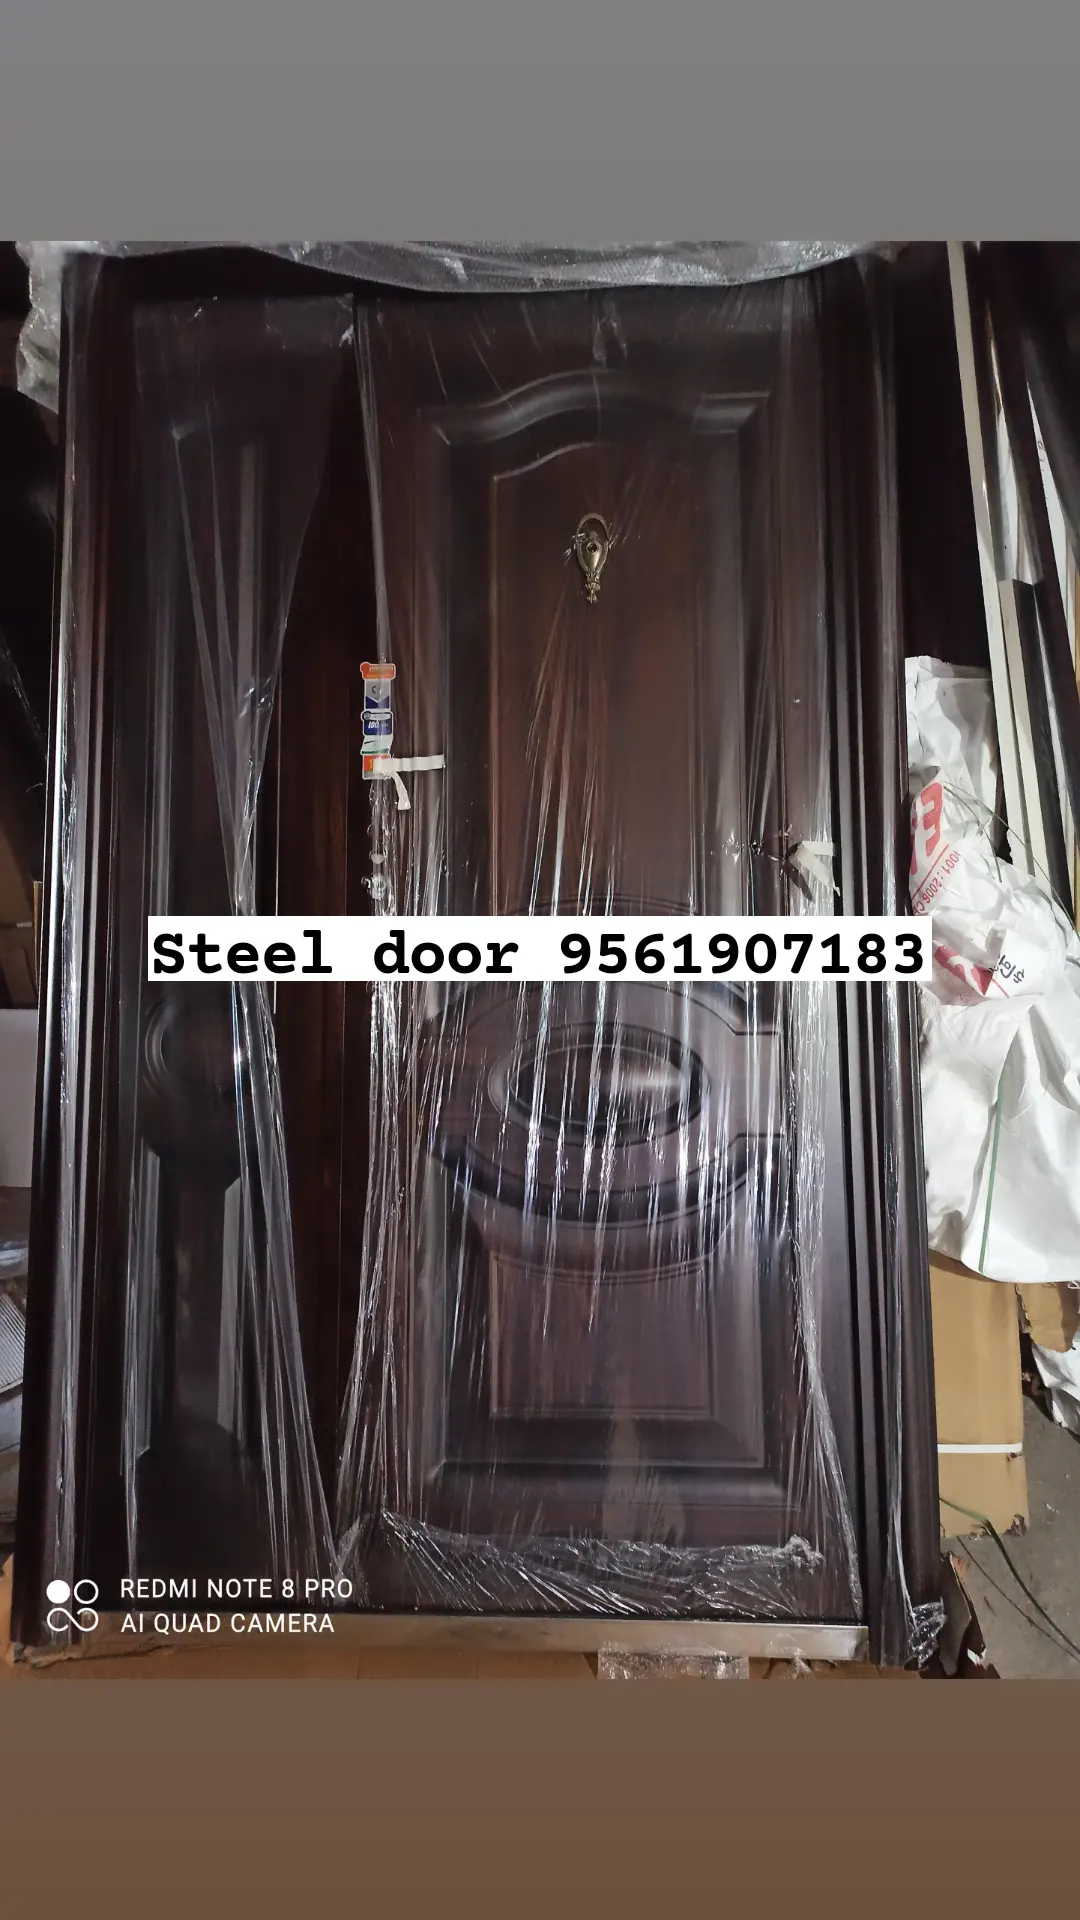 Steel door uploaded by business on 3/16/2022